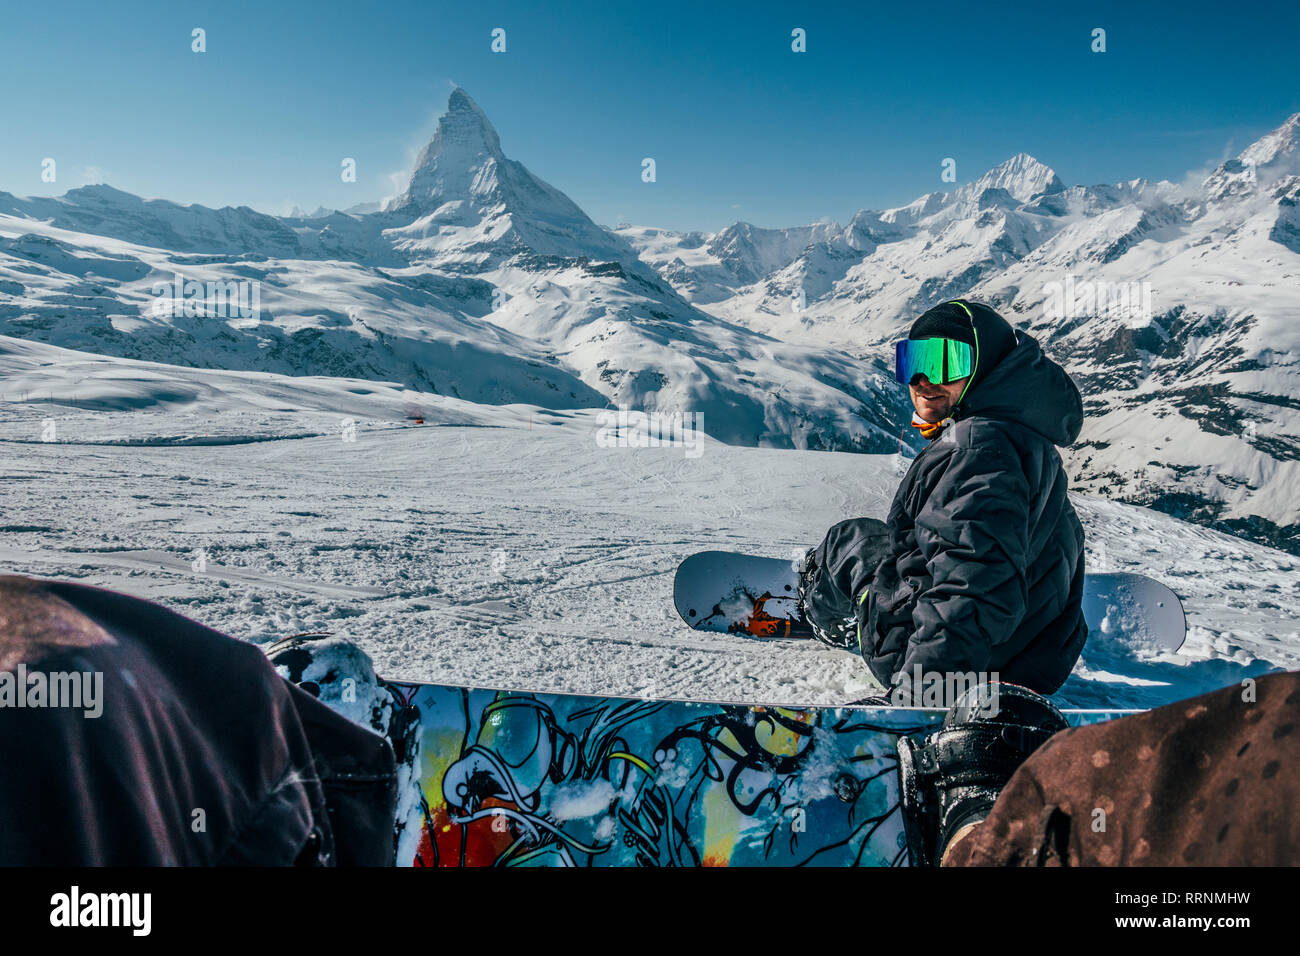 Persönliche Perspektive Snowboarder auf verschneiten Skipiste, Zermatt, Schweiz Stockfoto